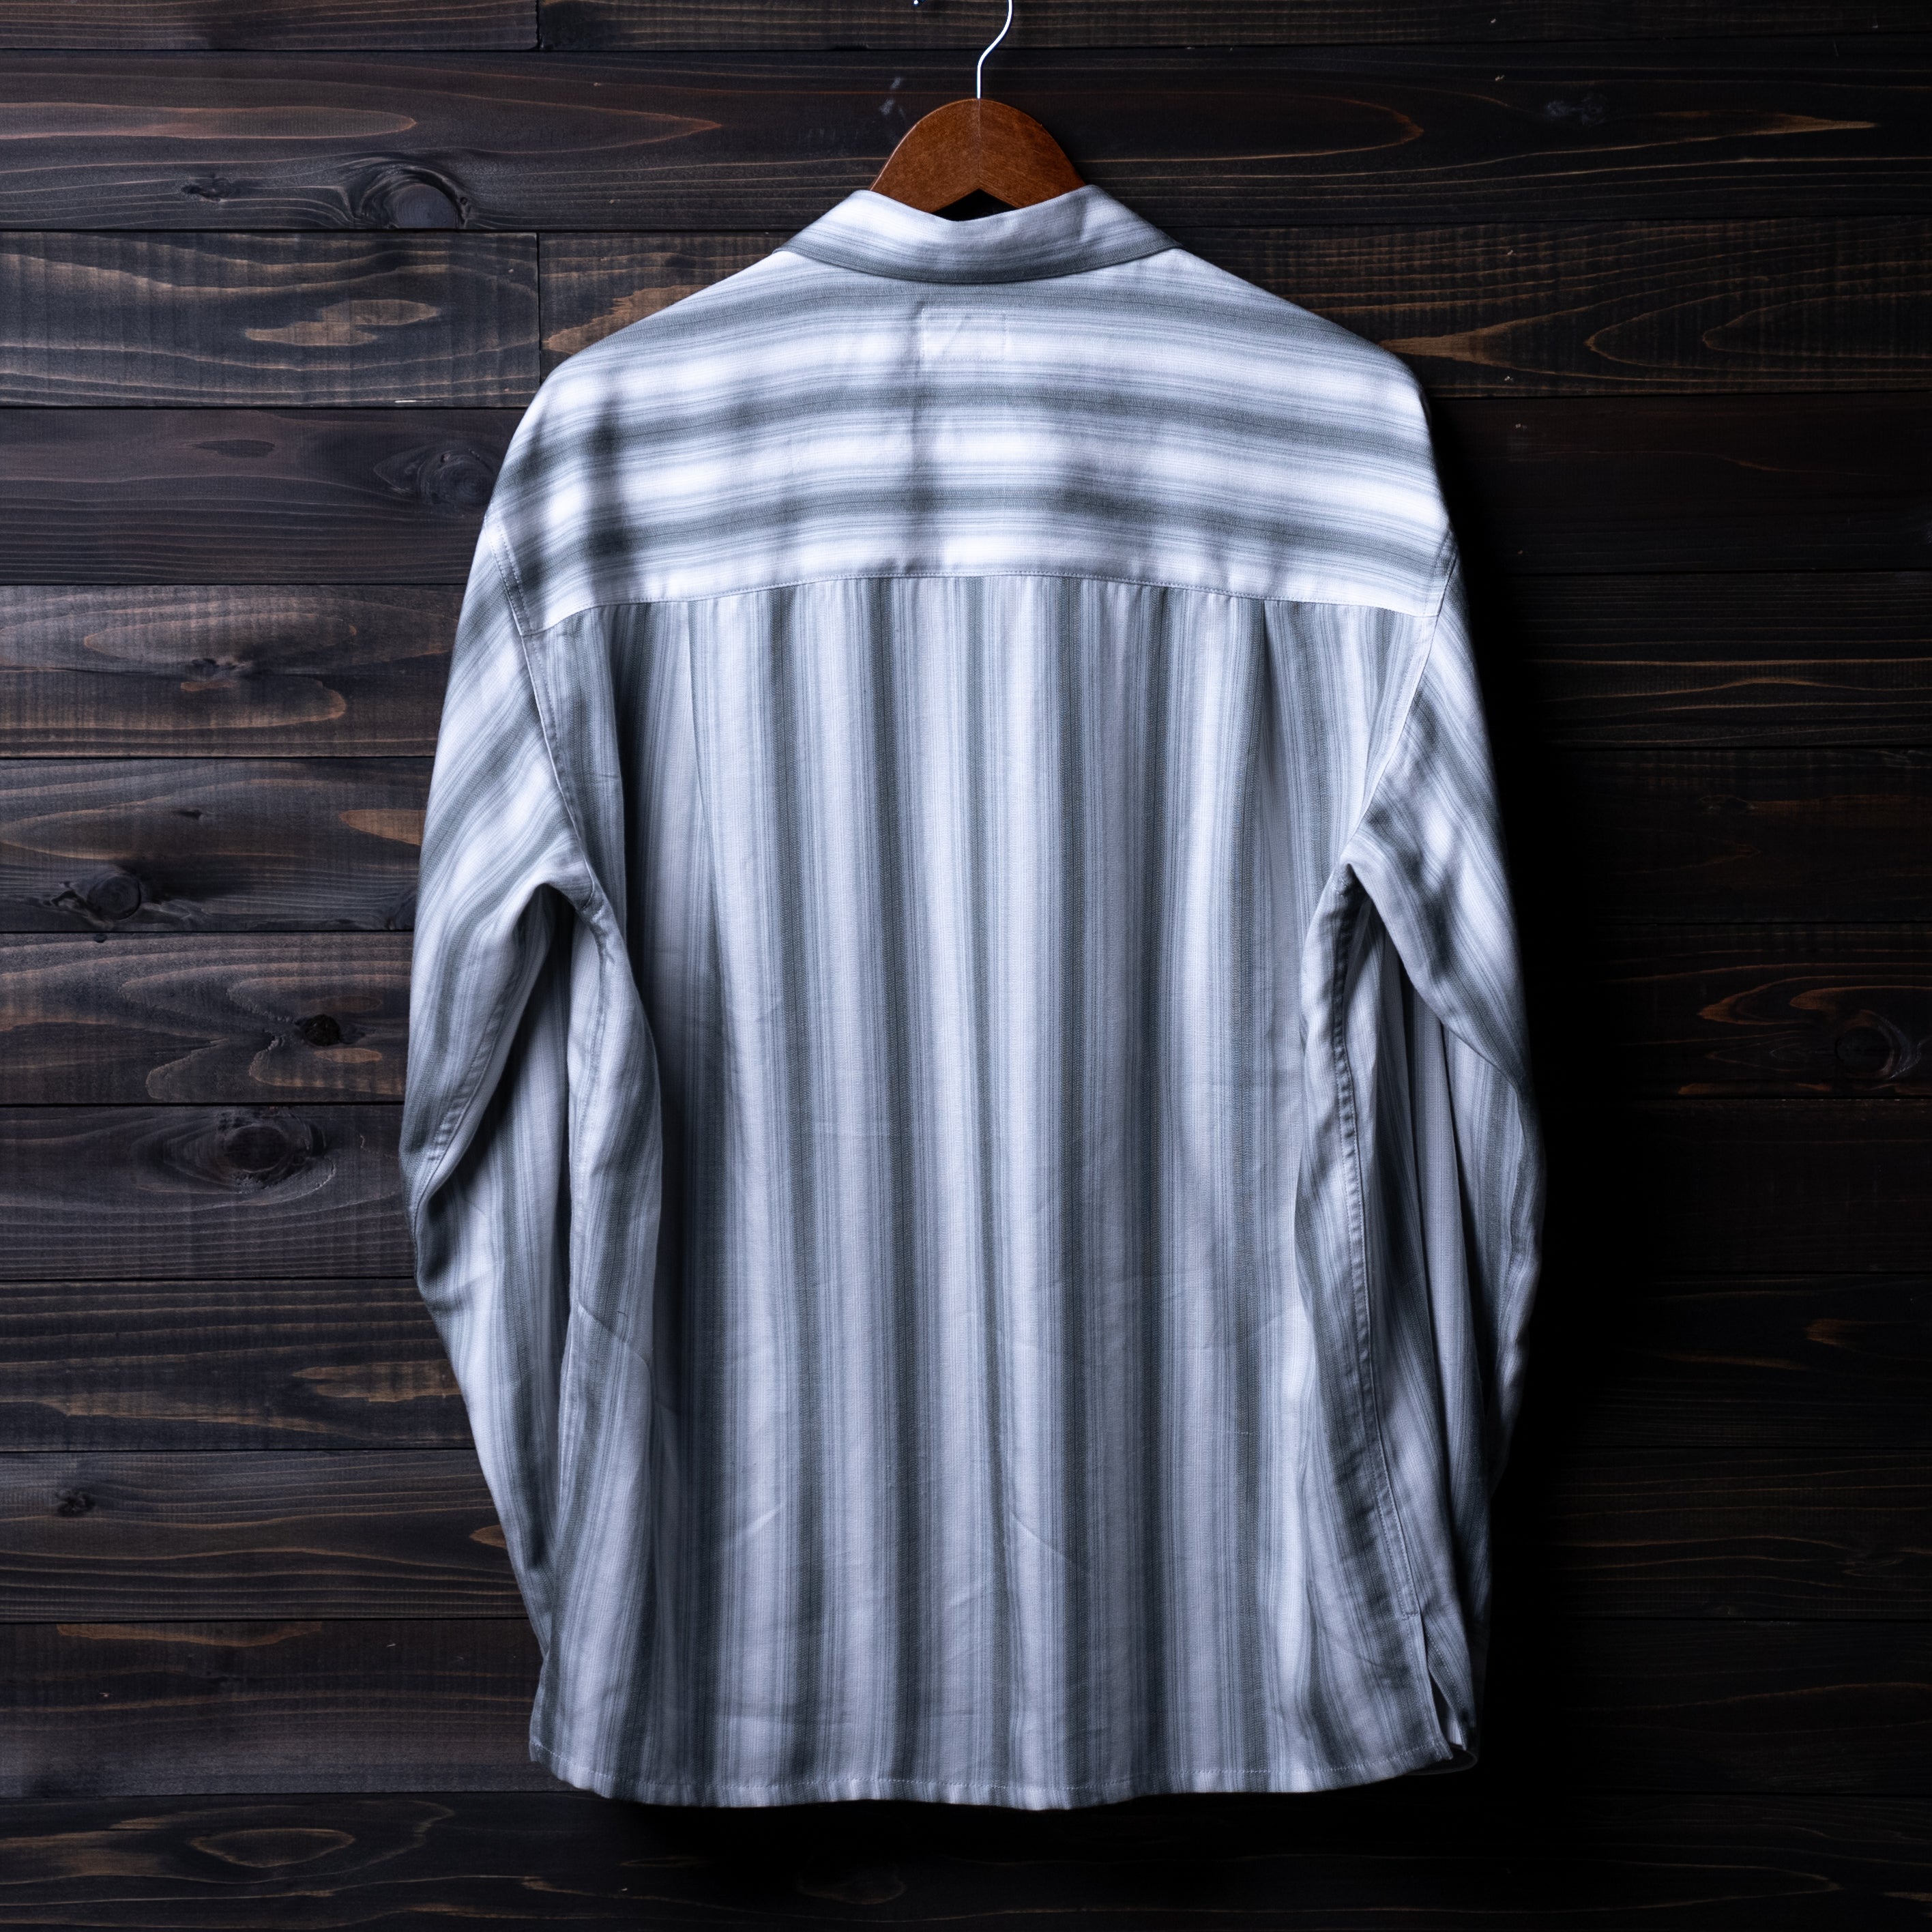 Ombre striped shirt – Pablo vinci